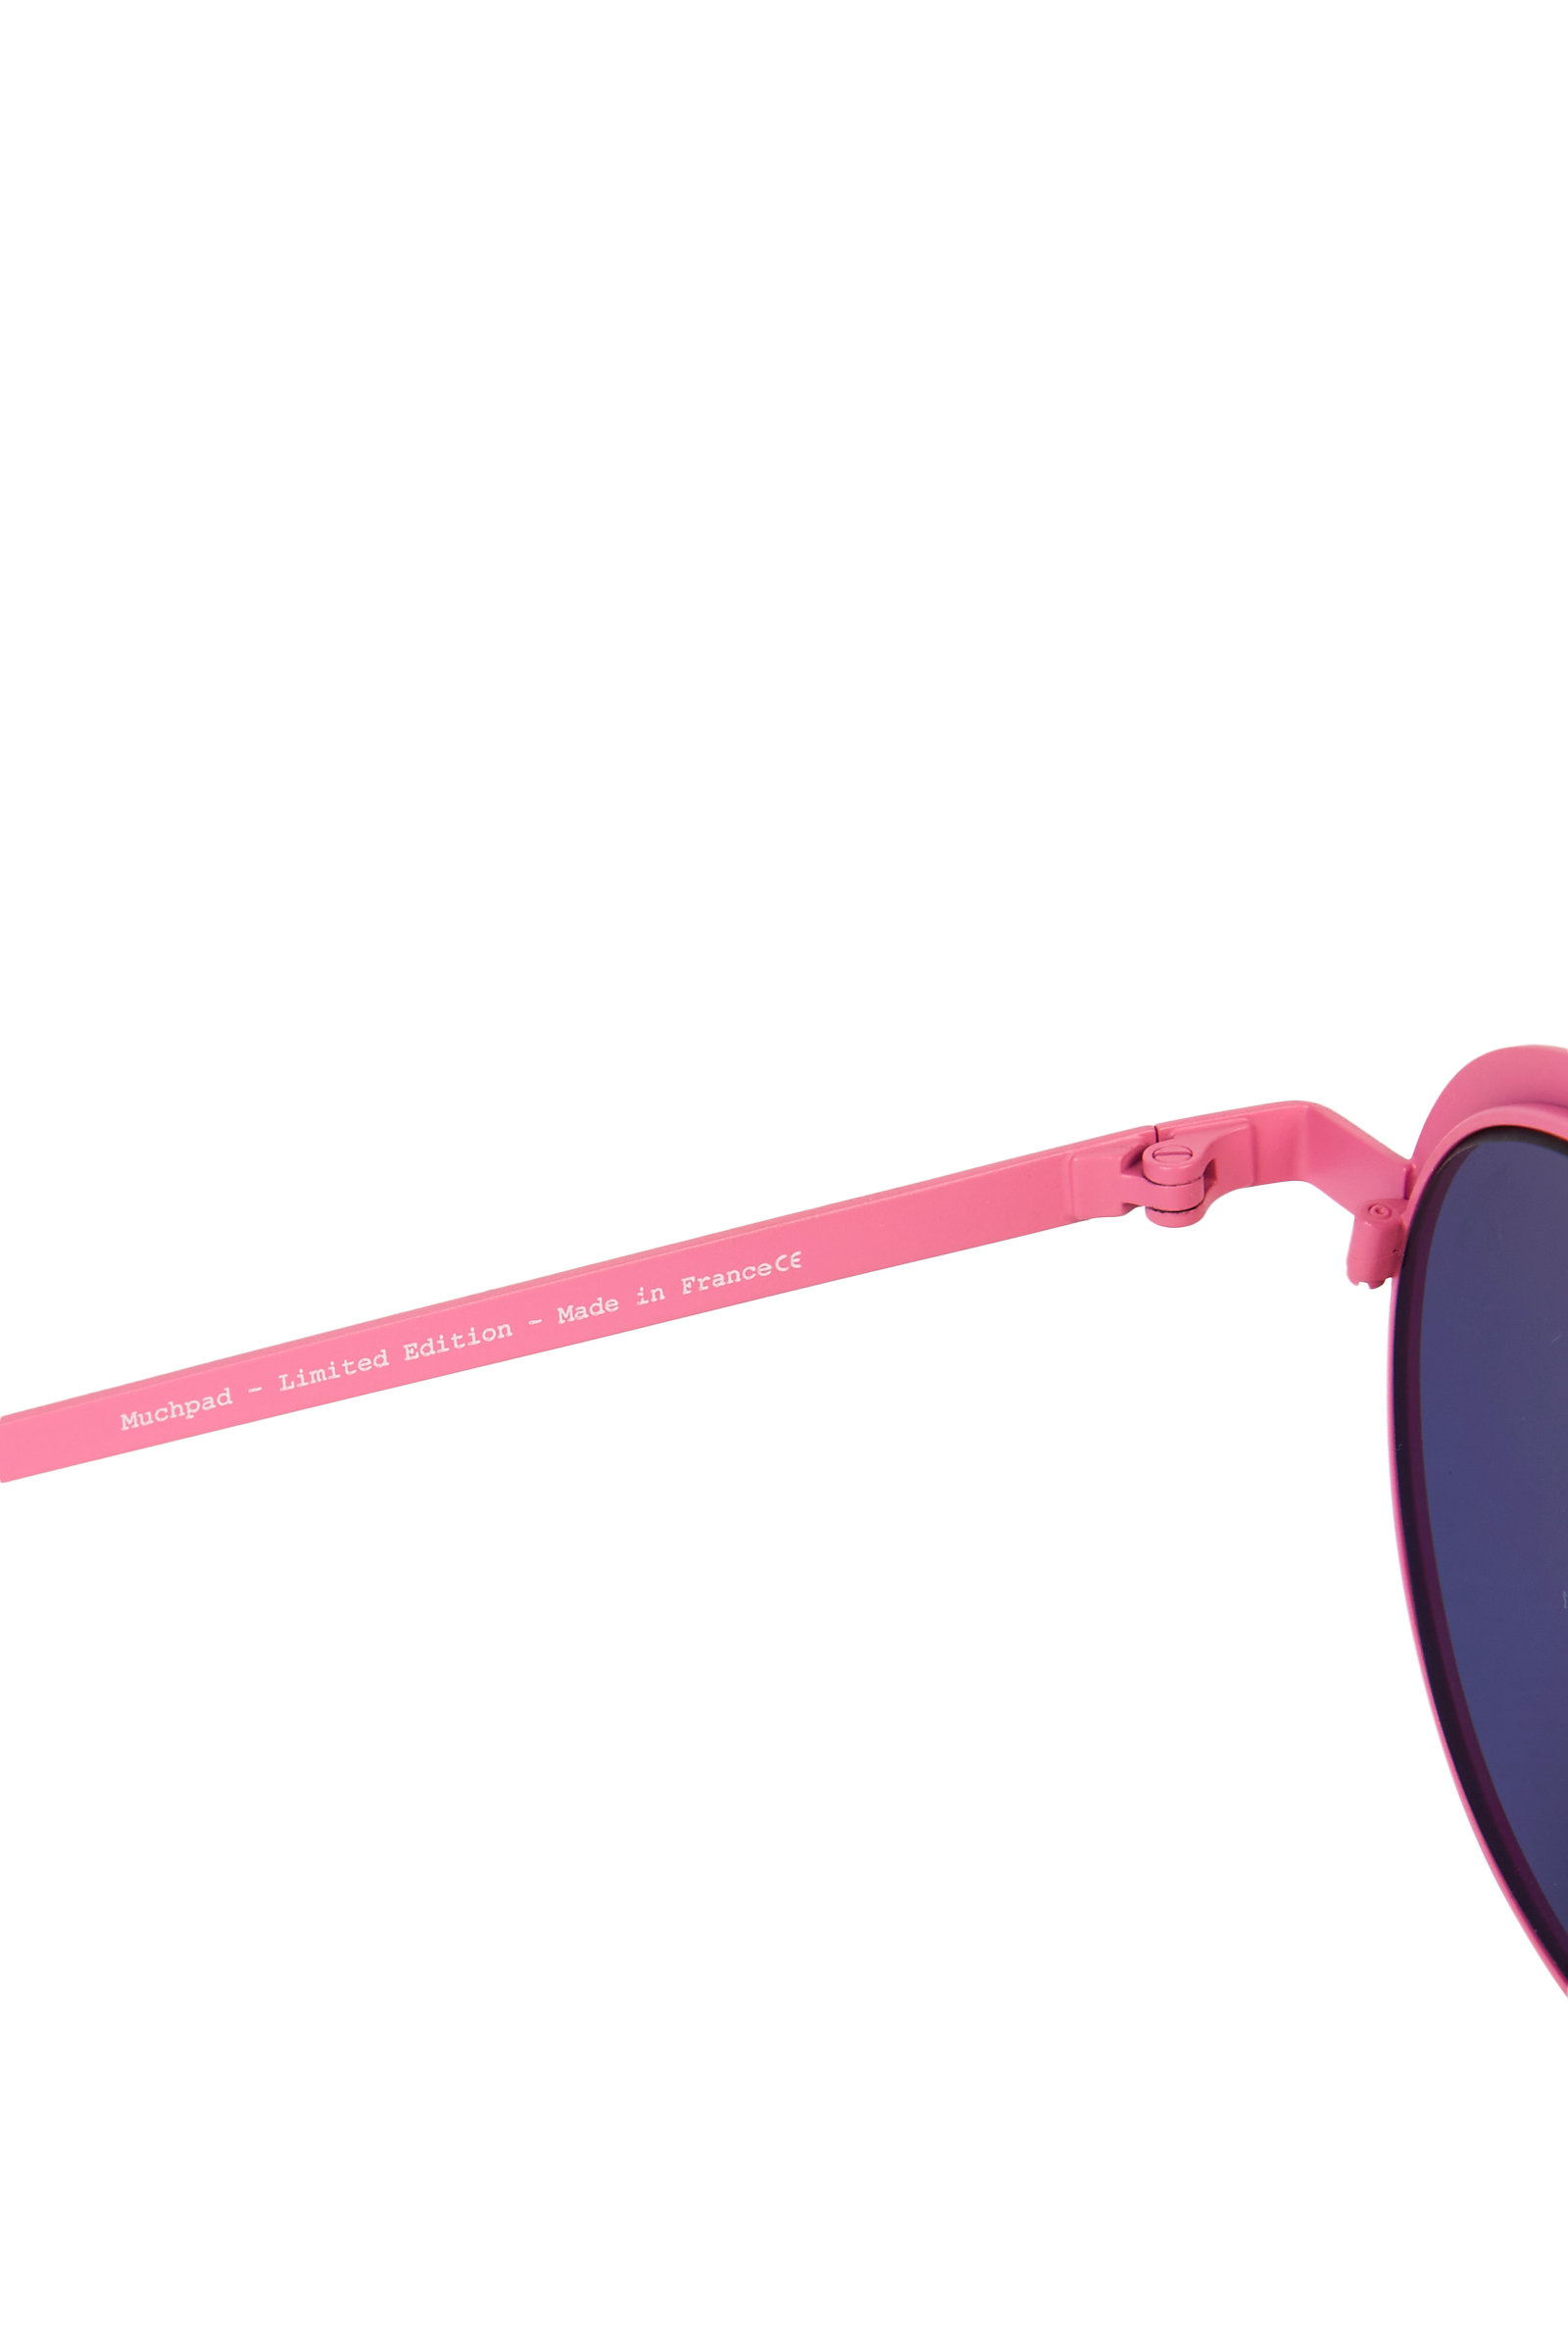 Mira Mikati x La Petite Lunette Rouge Sunglasses 